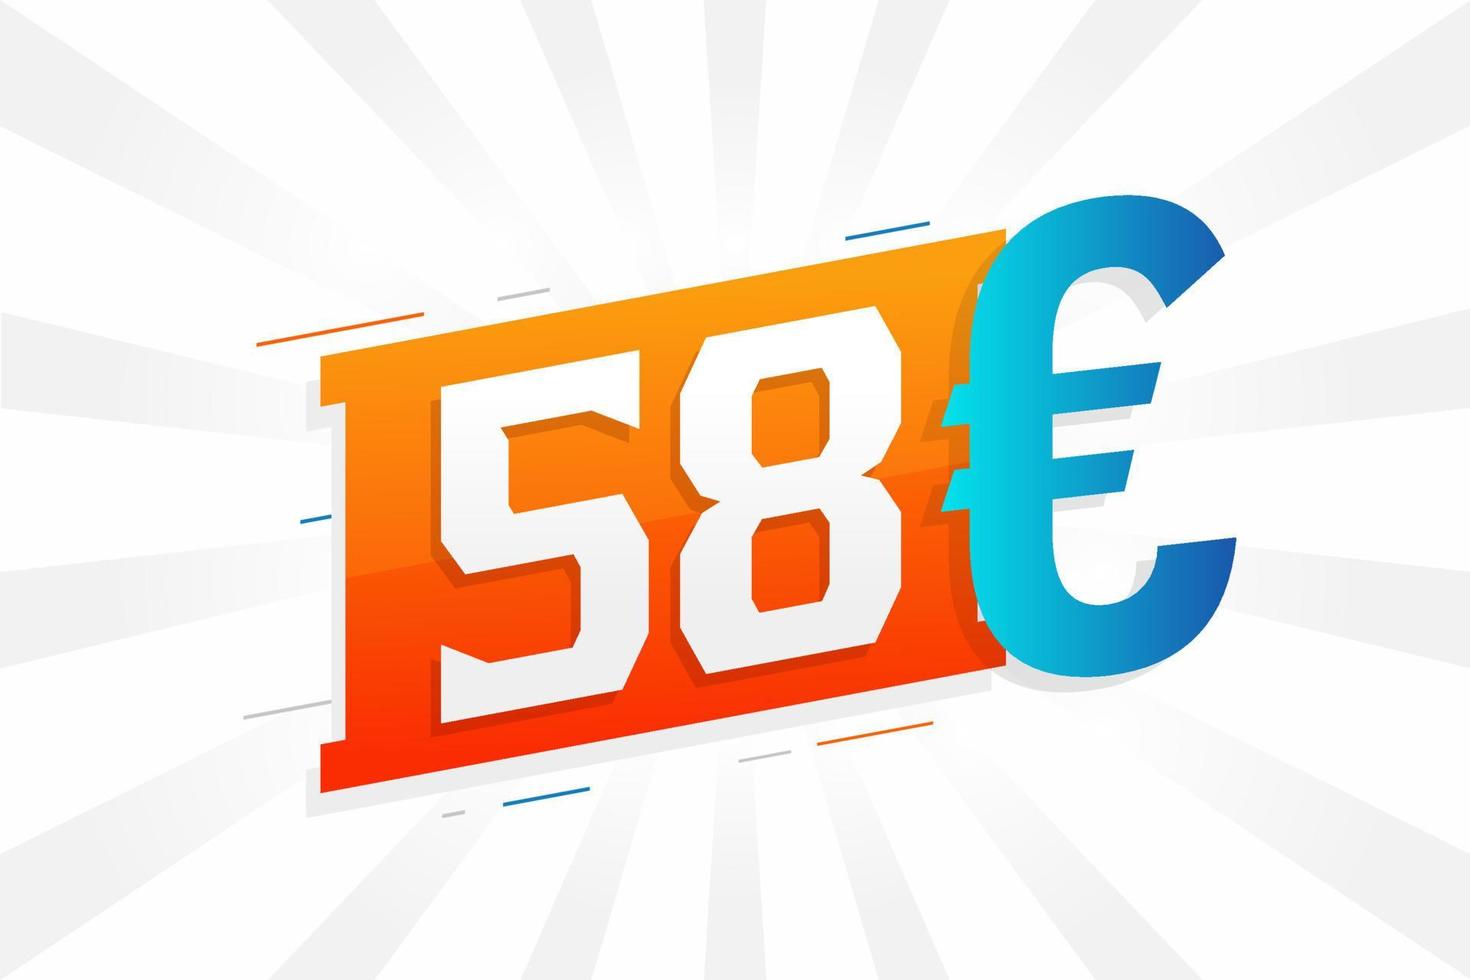 58 Euro Currency vector text symbol. 58 Euro European Union Money stock vector